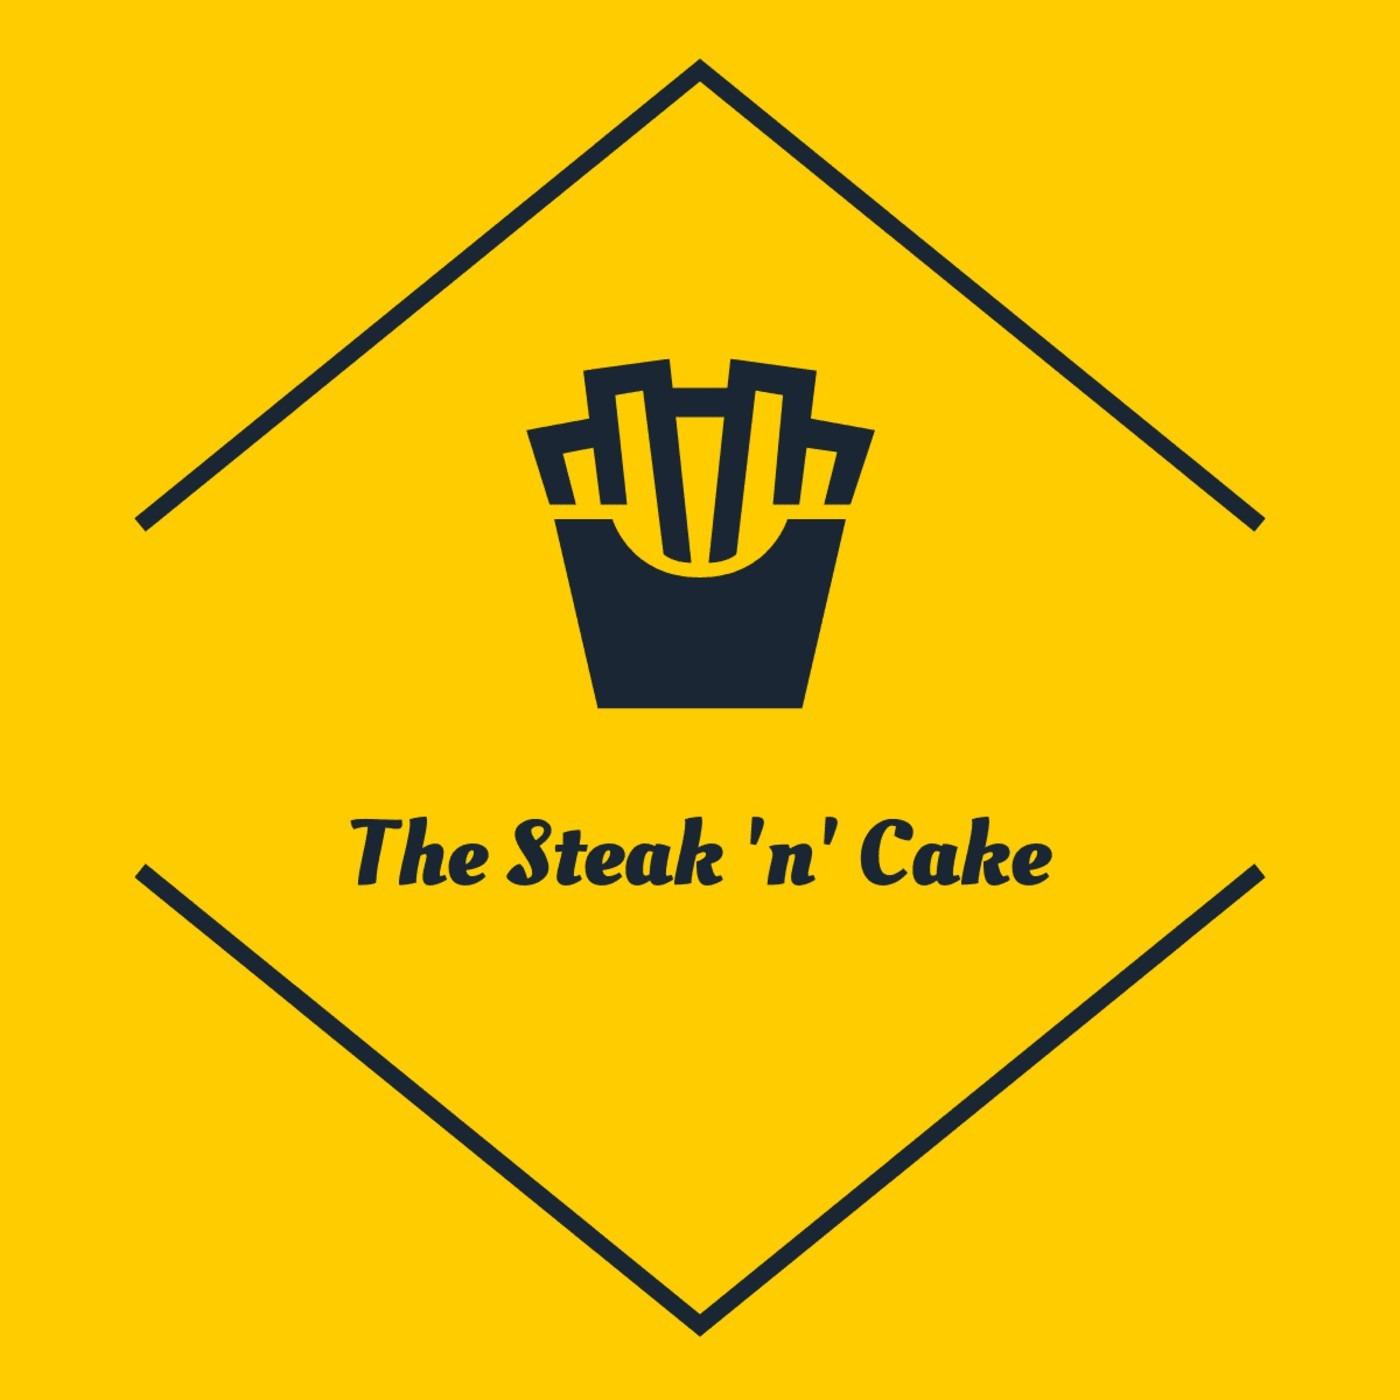 The Steak 'n' Cake